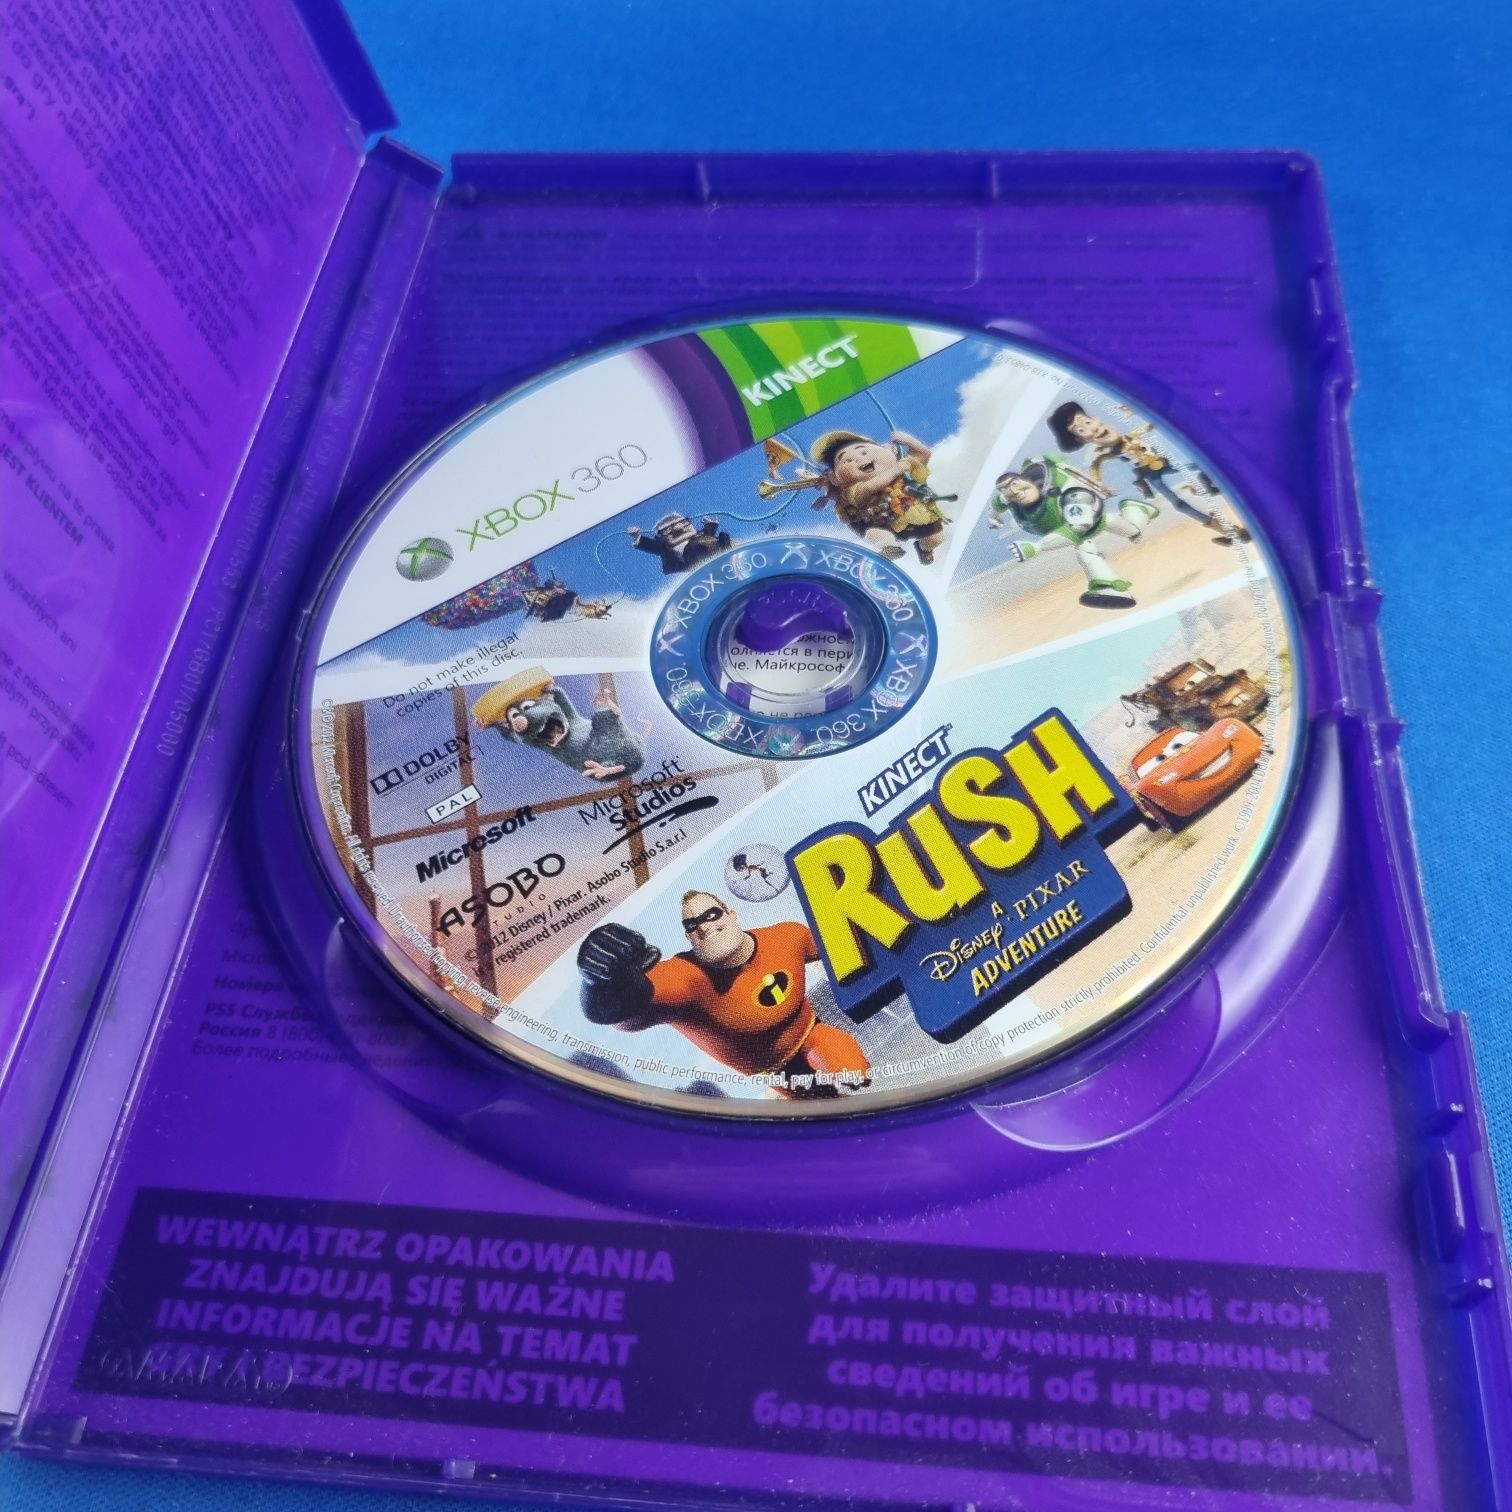 Kinect Rush Przygoda ze Studiem Pixar Xbox 360 Polska edycja